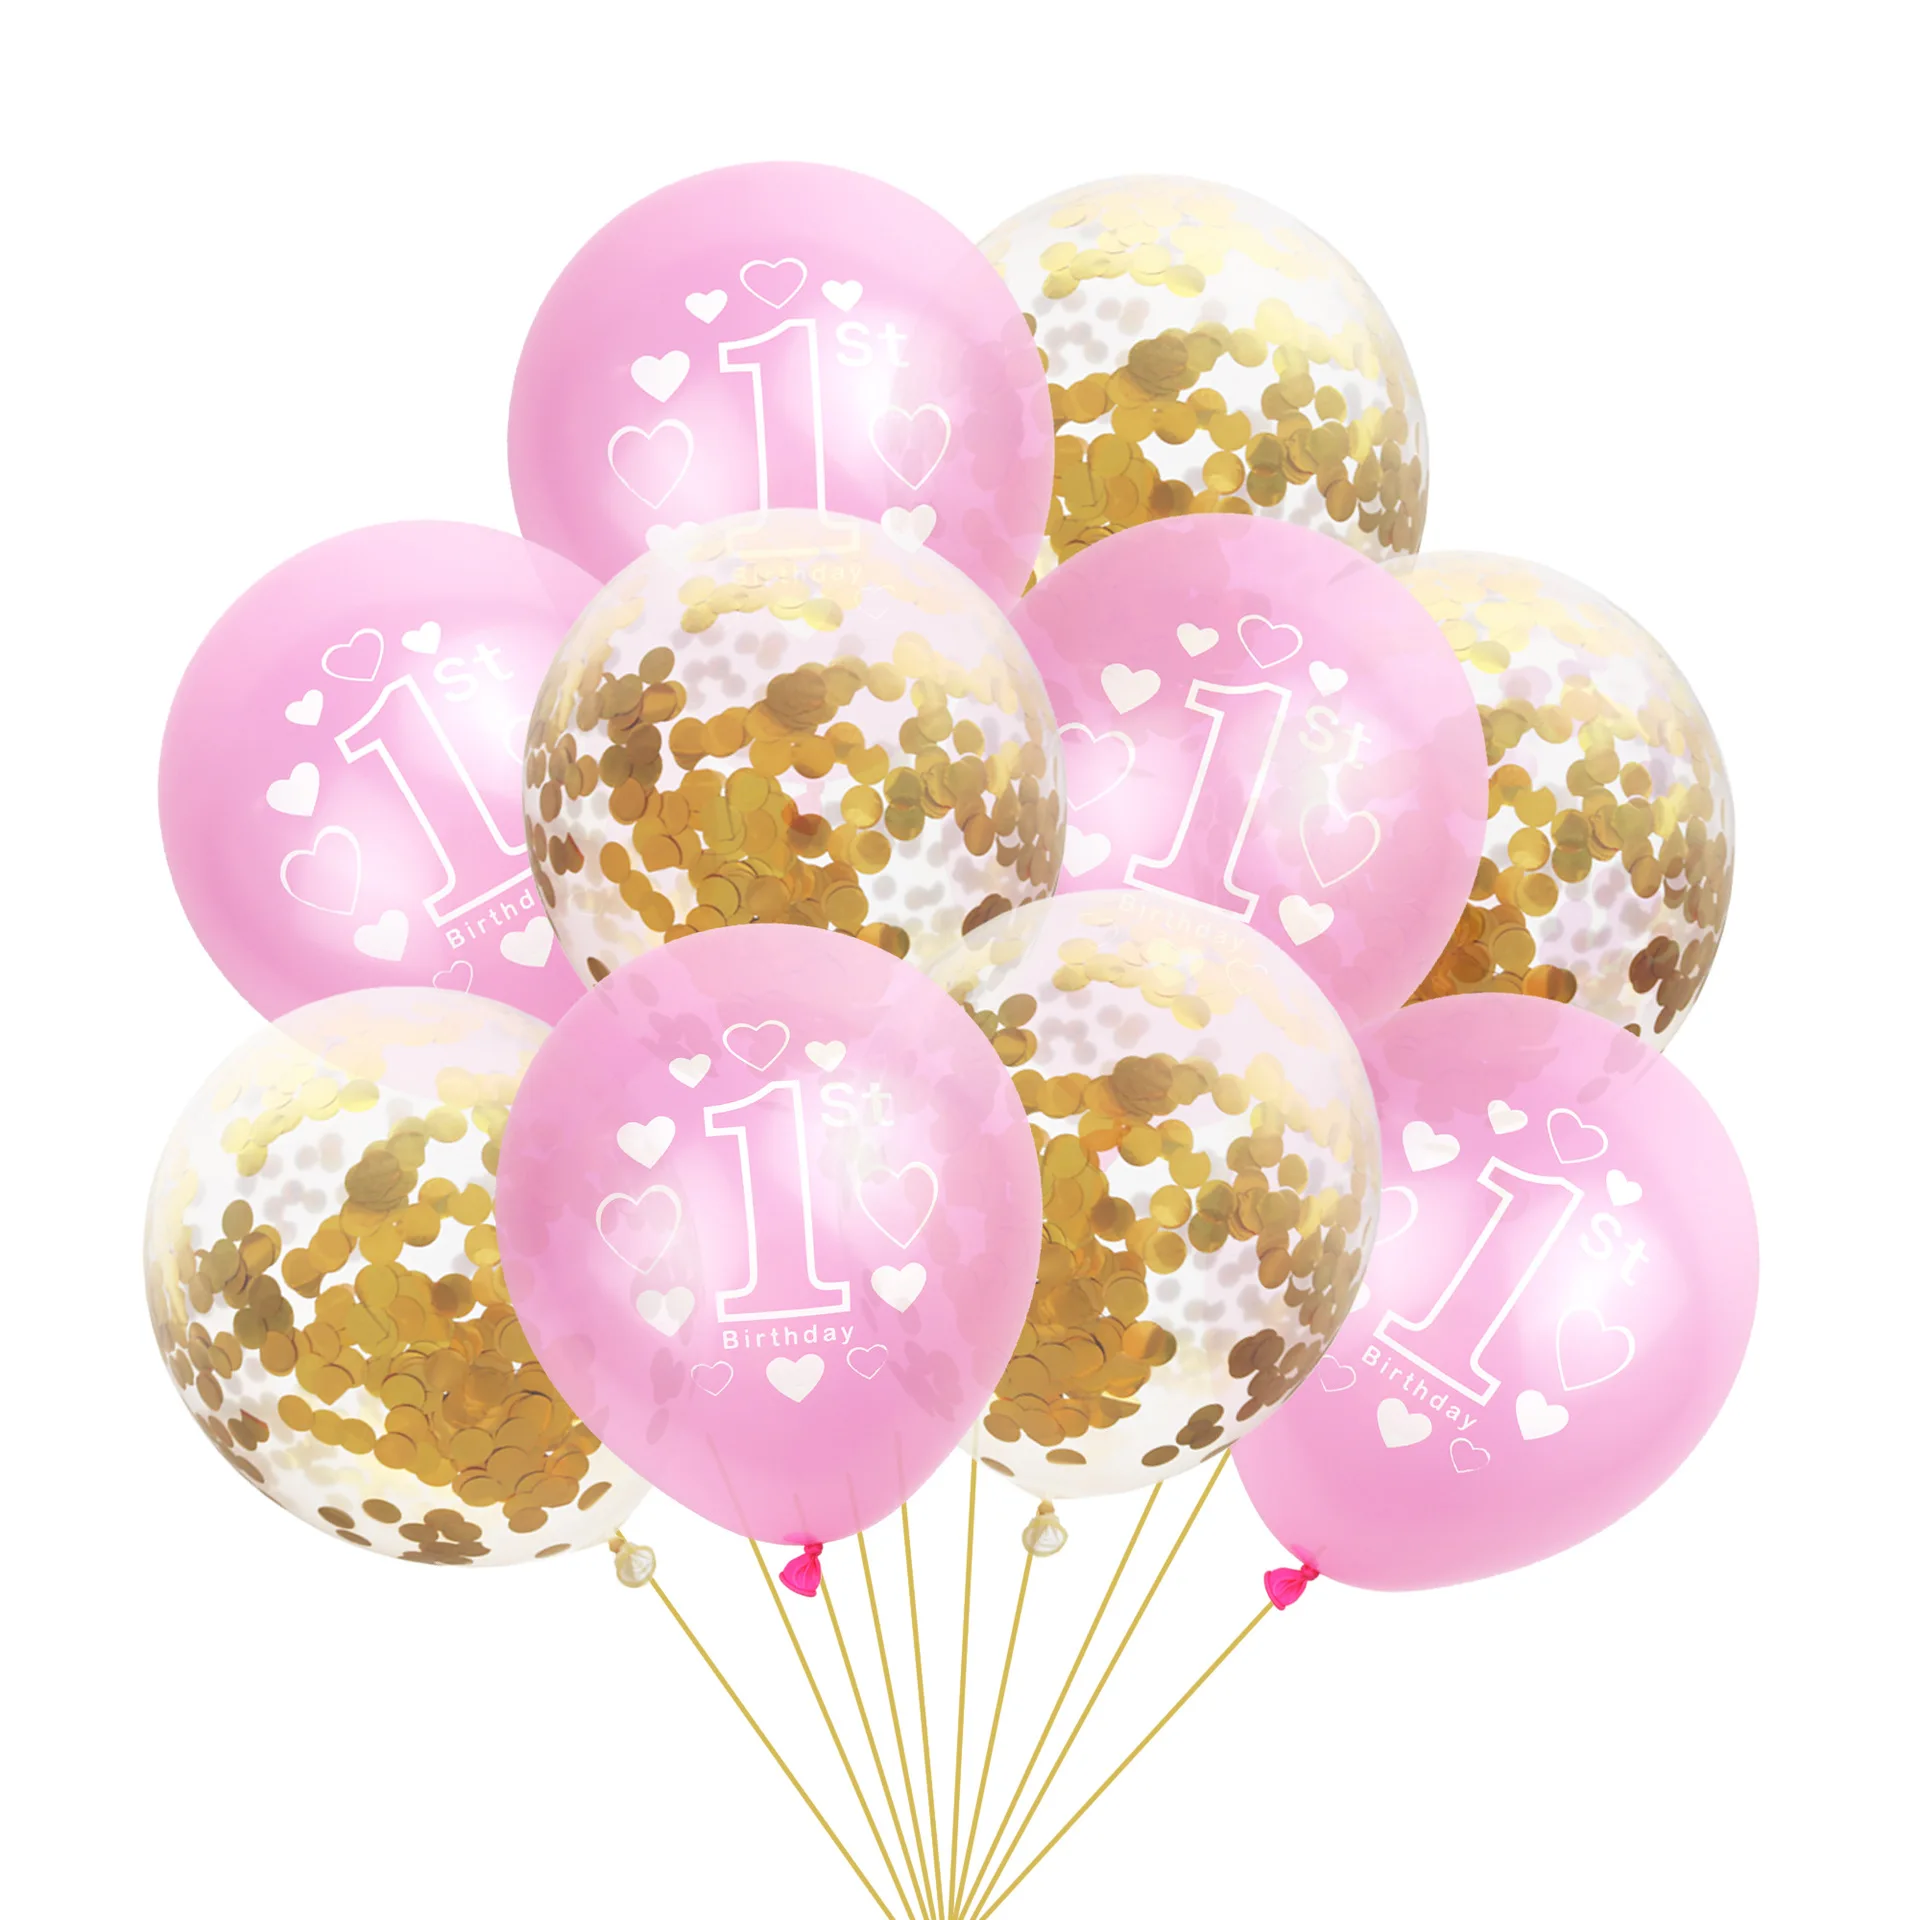 NICROLANDEE 10 шт./компл. 1st День рождения Декор с надписью Number One печатных Baby Shower конфетти воздушные шары с блестками Детские латексные шары - Цвет: Gold Pink